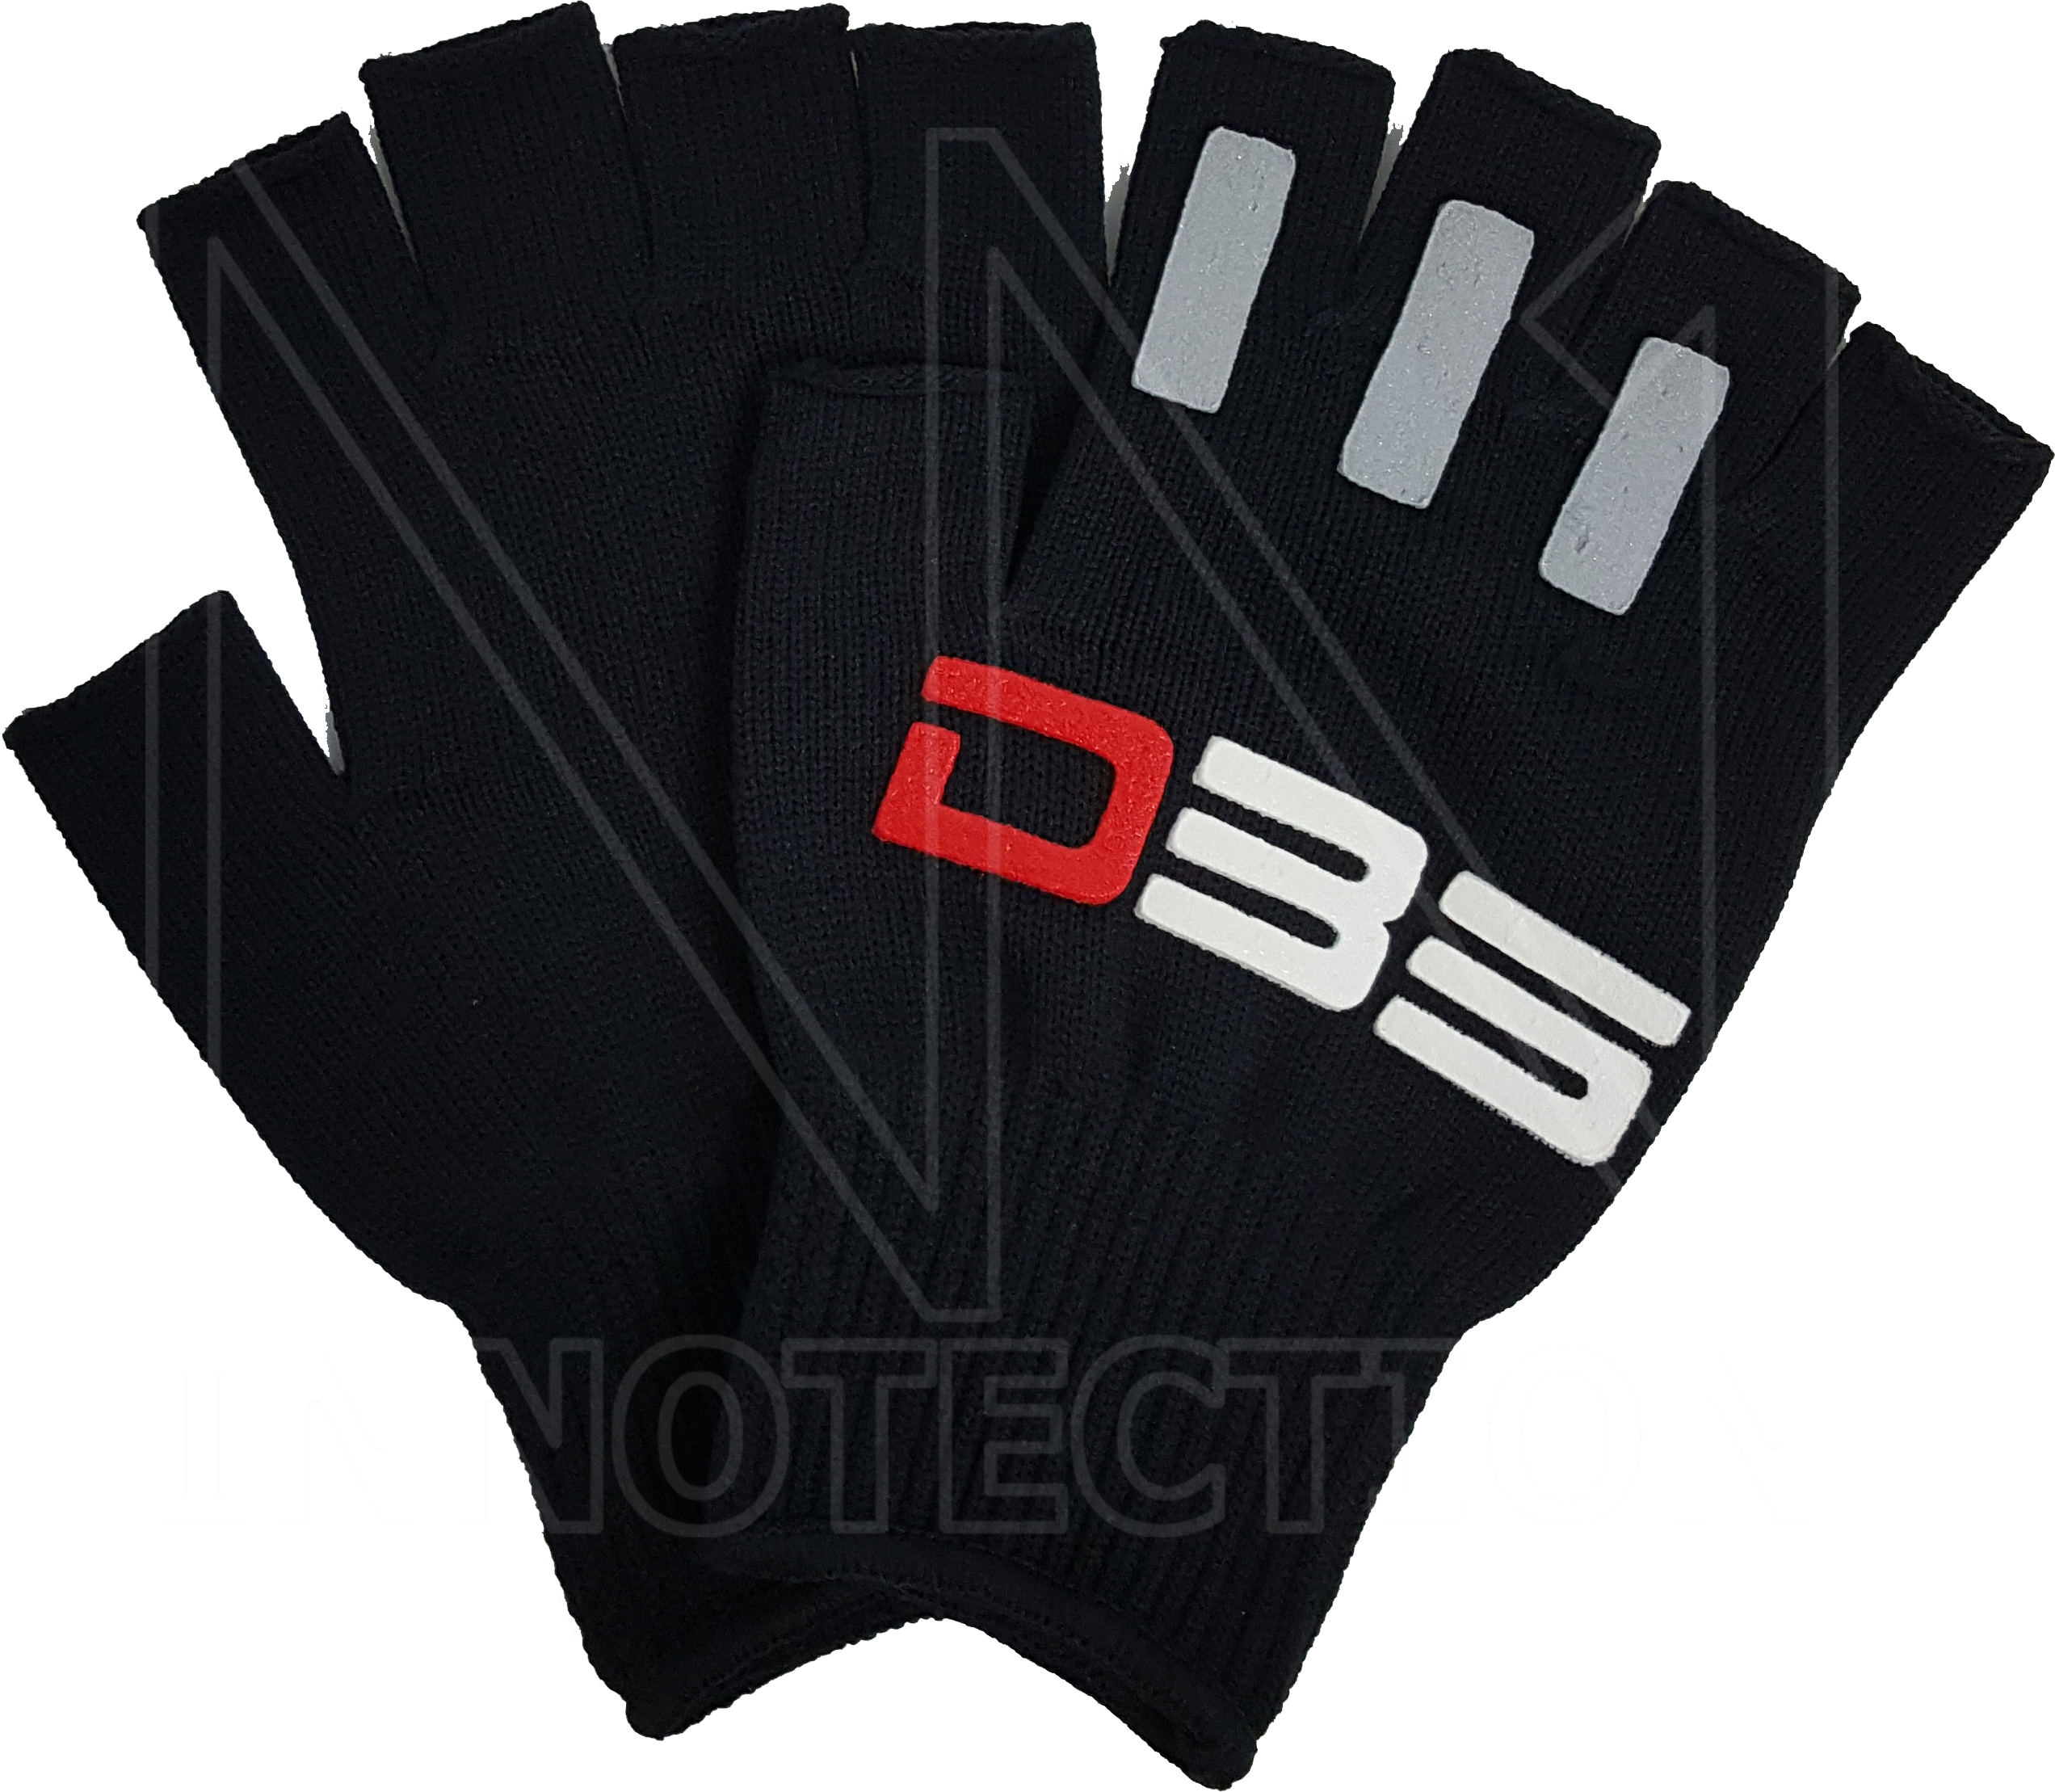 ถุงมือกันลื่น ตัดห้านิ้ว  รุ่น G3 ขับมอเตอร์ไซค์  กันแดด Gloves